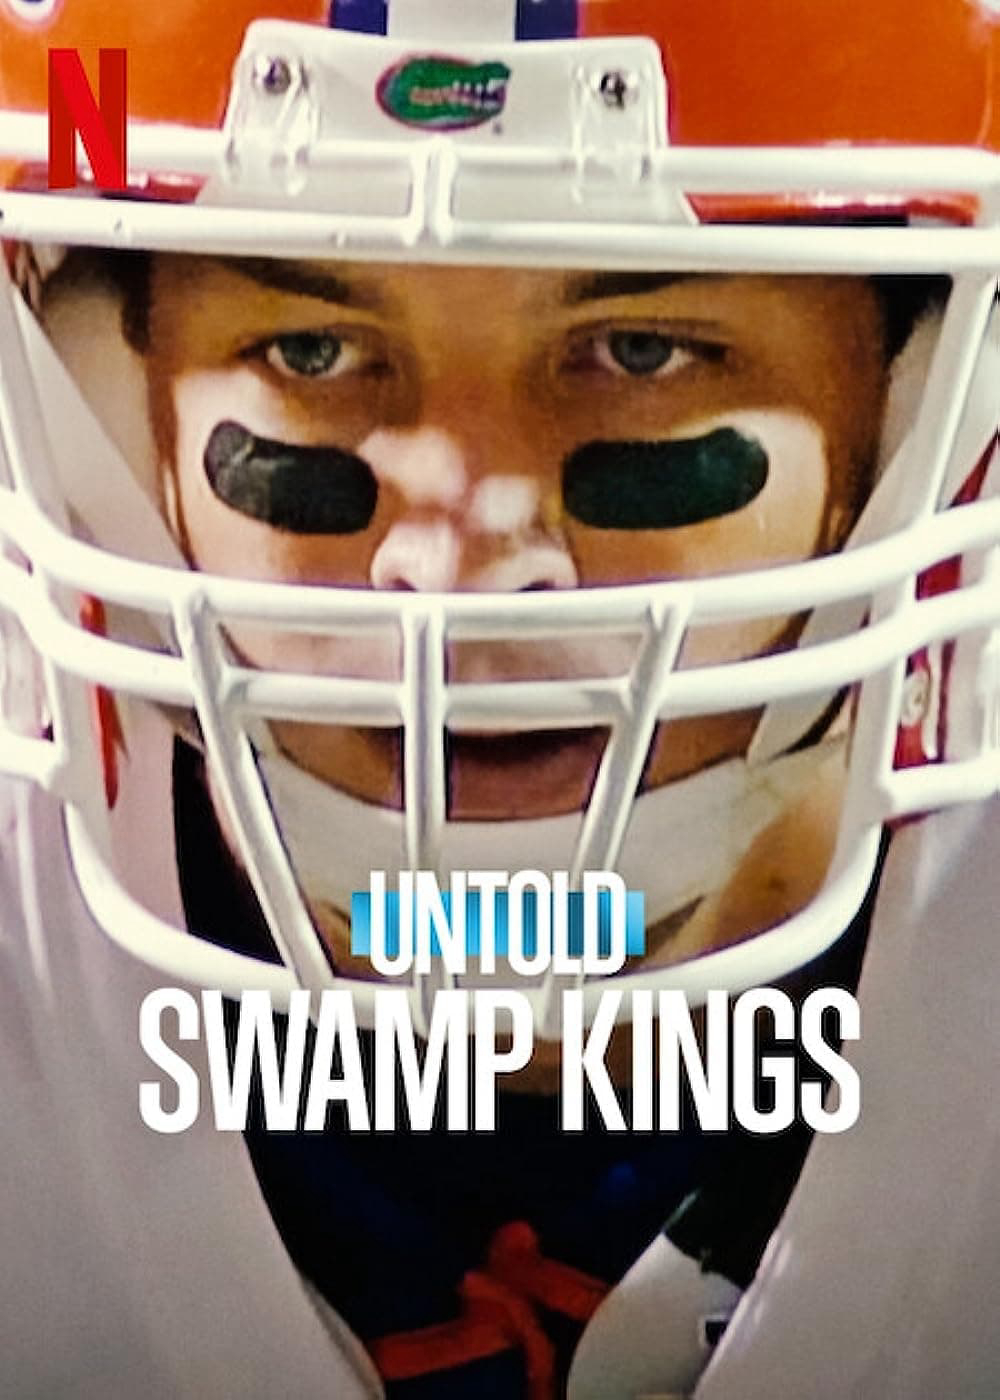 Bí mật giới thể thao: Vua đầm lầy - Untold: Swamp Kings